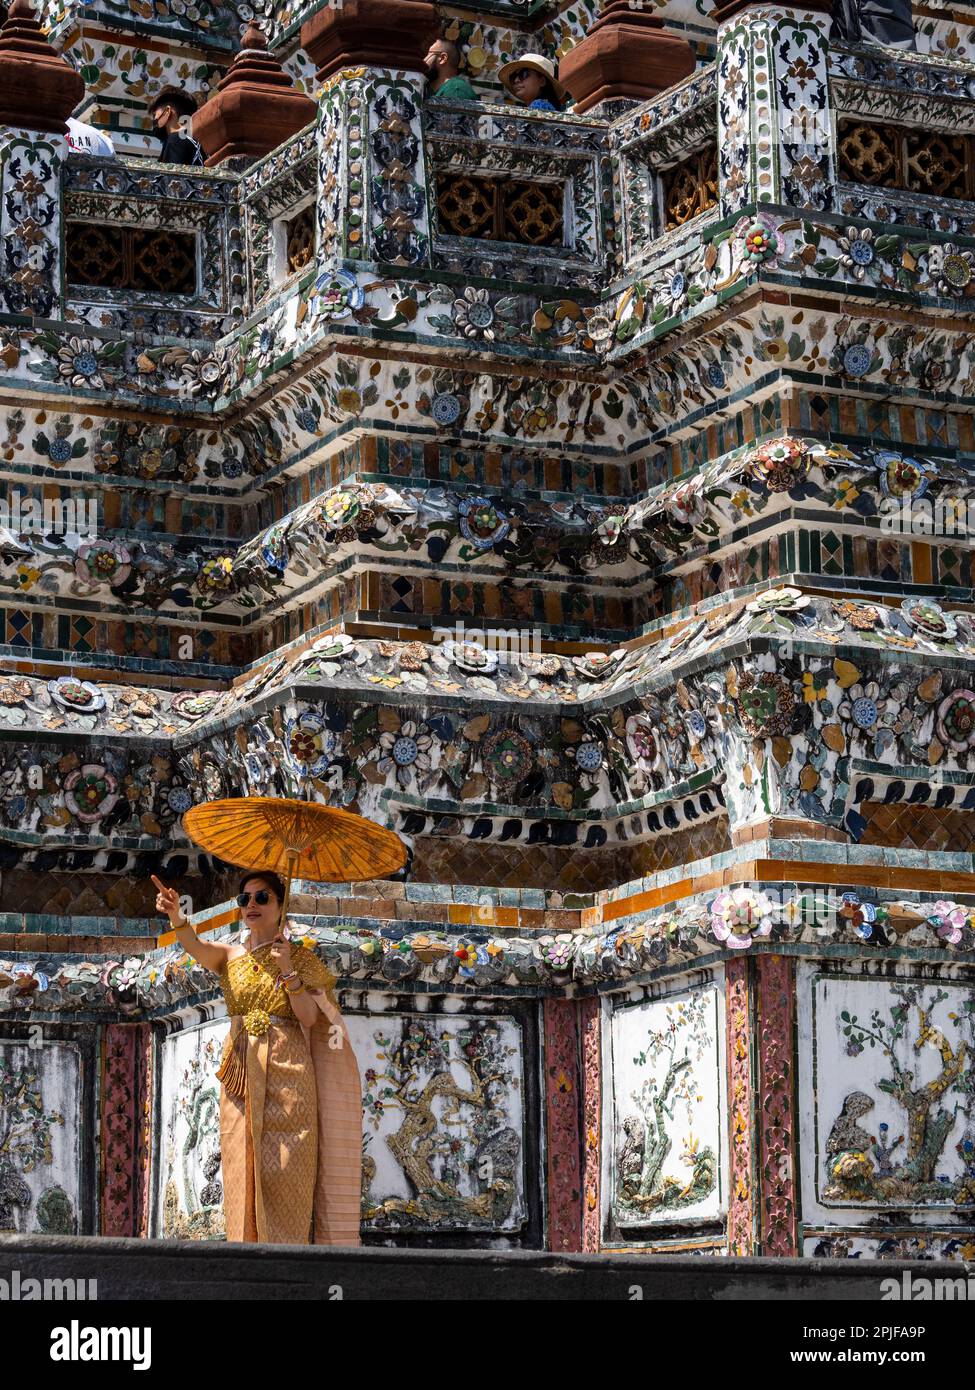 Une gentille dame thaïlandaise ornée d'une tenue traditionnelle orange vibrante se dresse fièrement par le magnifique temple Wat Arun à Bangkok, en Thaïlande, tenant une ma Banque D'Images